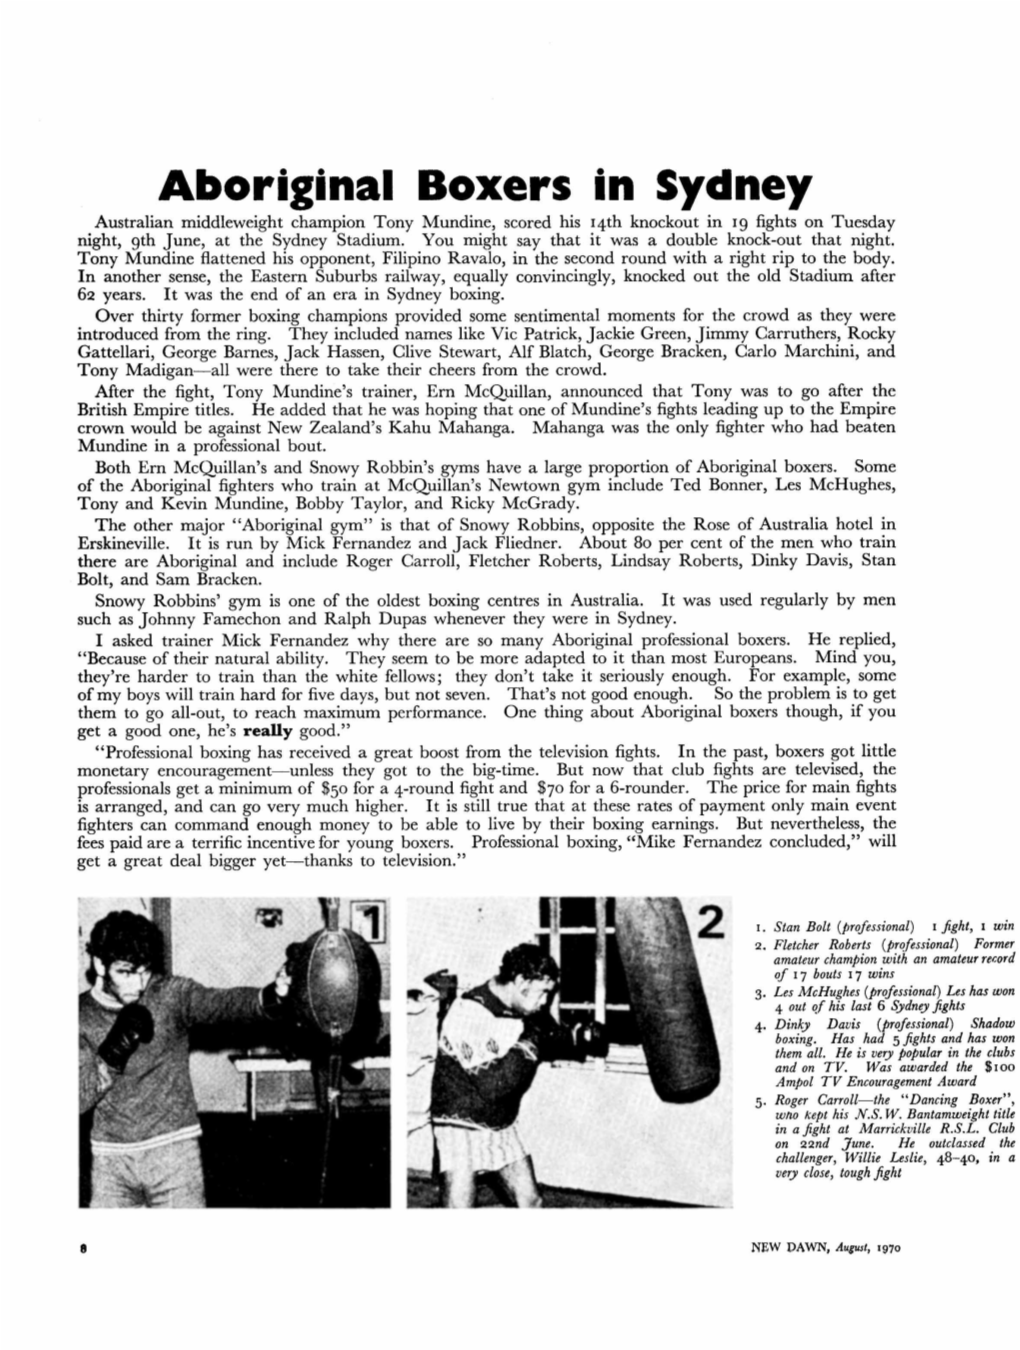 Aboriginal Boxers in Sydney, Dawn